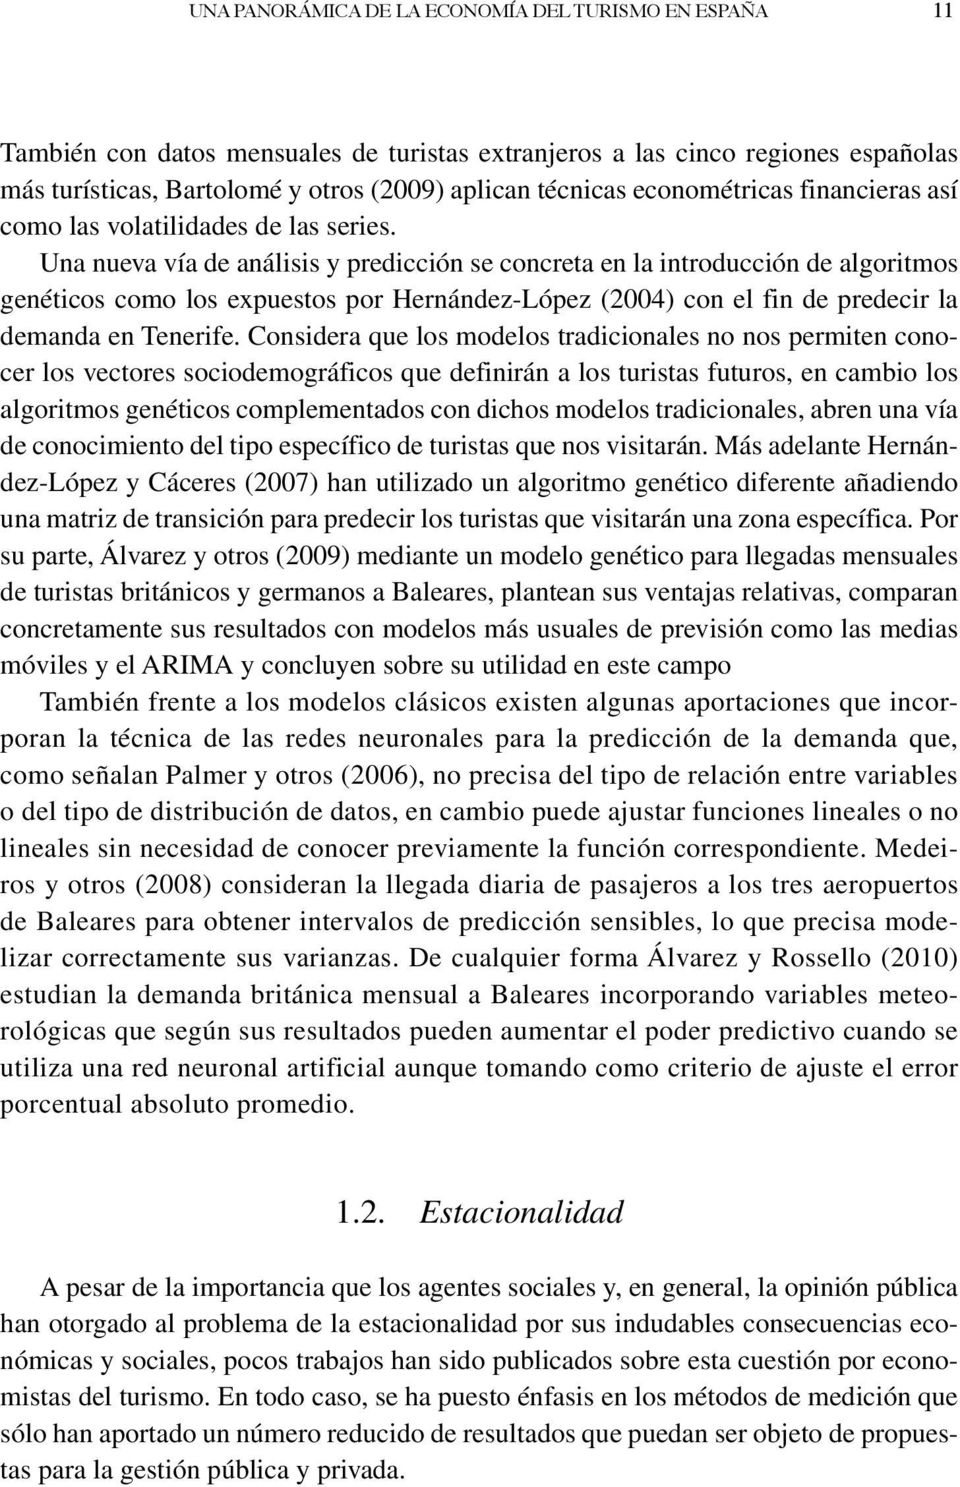 Una nueva vía de análisis y predicción se concreta en la introducción de algoritmos genéticos como los expuestos por Hernández-López (2004) con el fin de predecir la demanda en Tenerife.